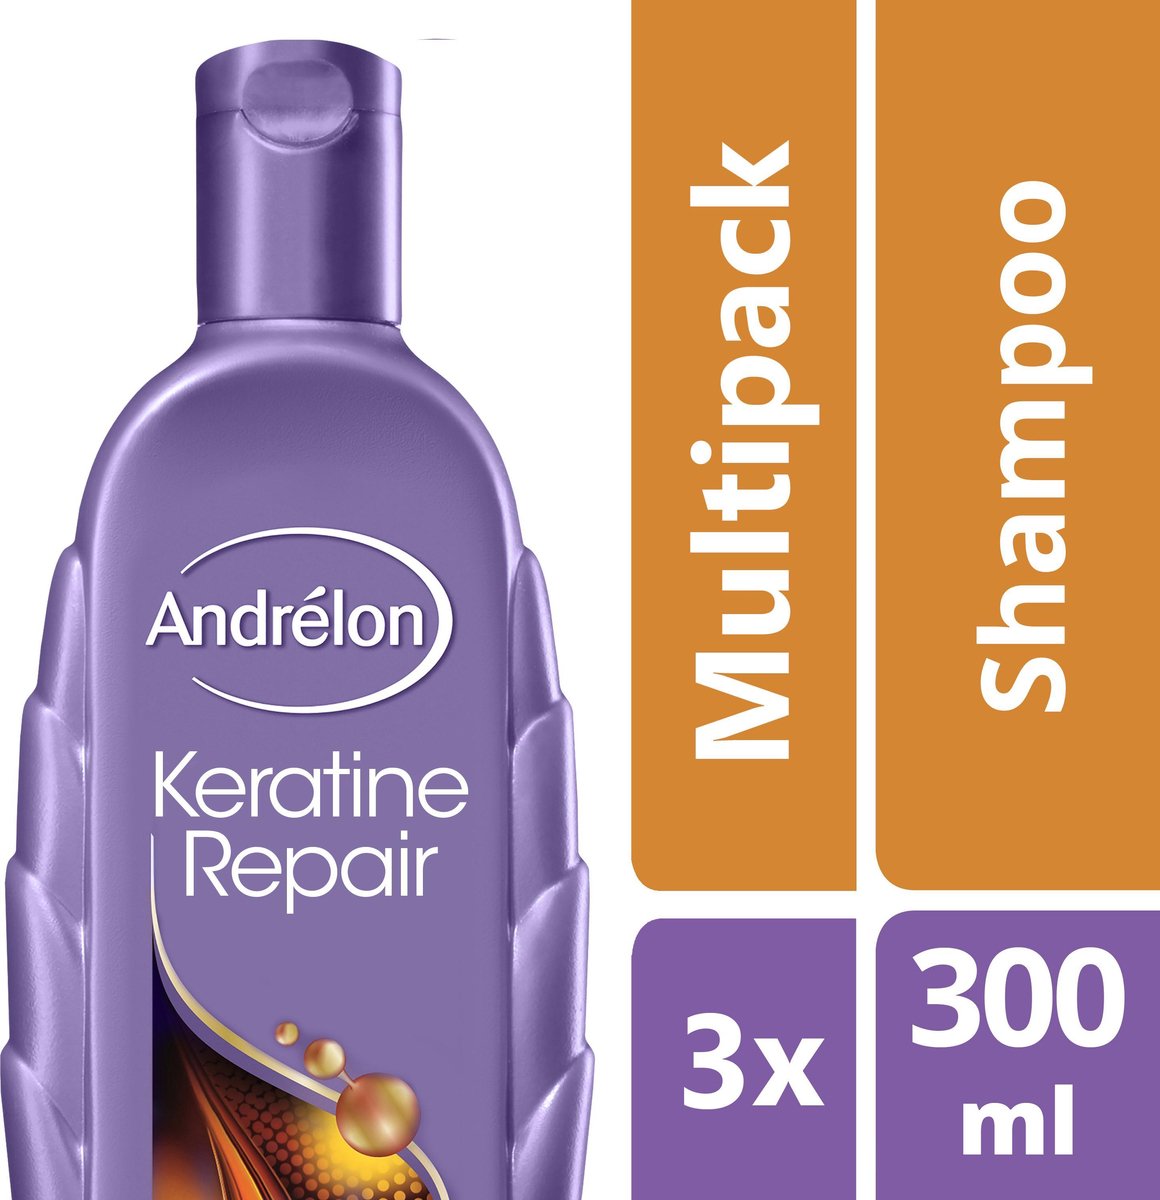 Andrélon Keratine Repair - 3 x 300 ml - Shampoo - Voordeelverpakking